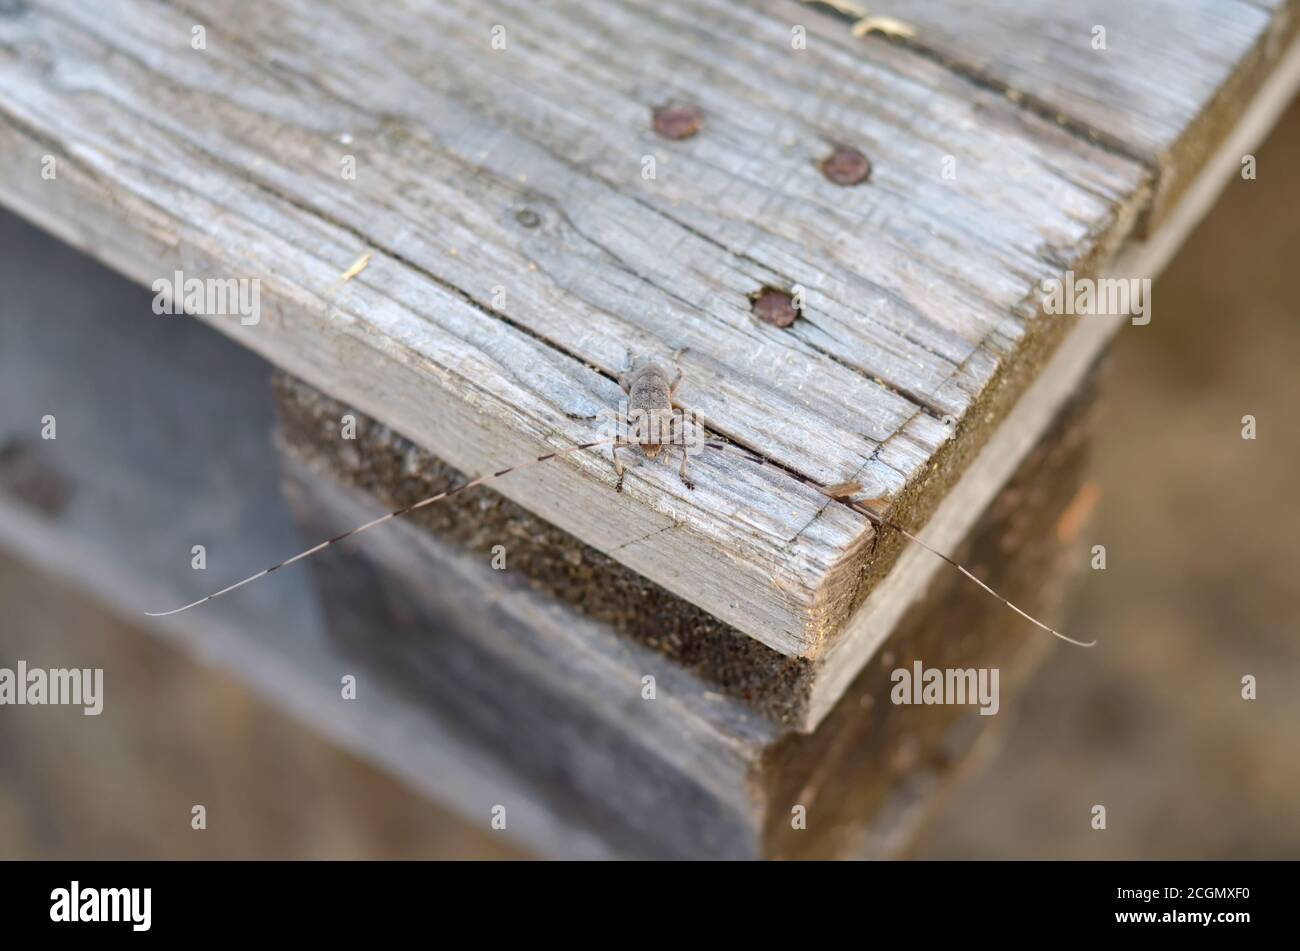 Acanthocinus aedilis. Timberman Käfer sitzt auf altem Brett. Fauna der Ukraine. Geringe Schärfentiefe, Nahaufnahme. Stockfoto